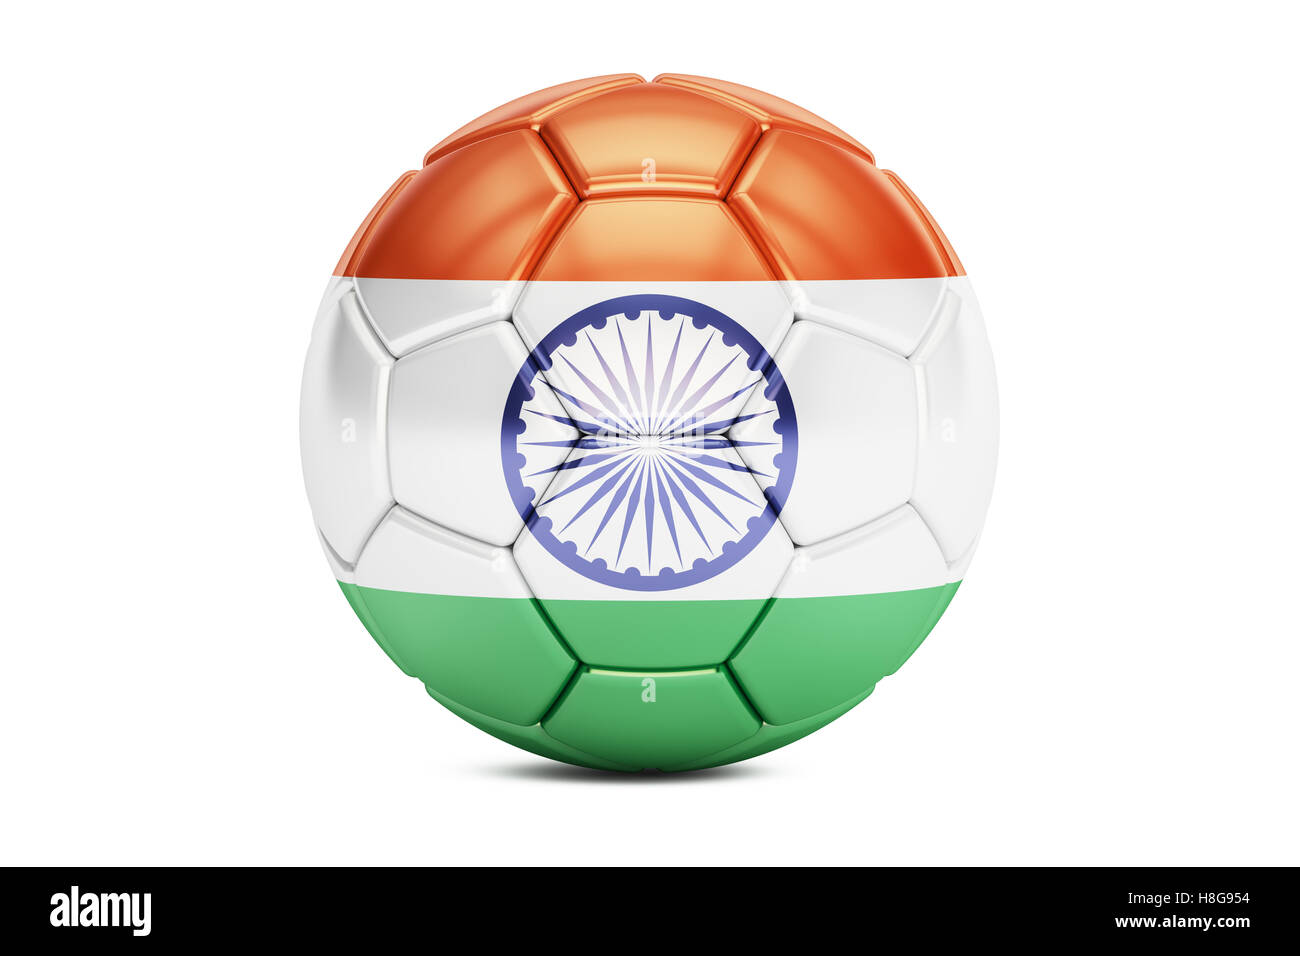 Ballon de football avec le drapeau de l'Inde, 3D Rendering Banque D'Images